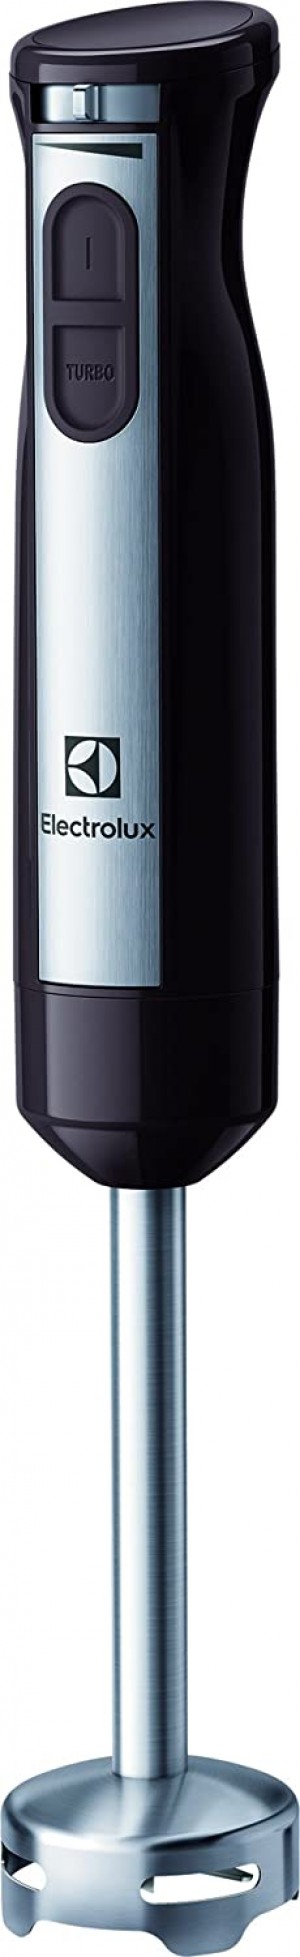 Electrolux ESTM6000